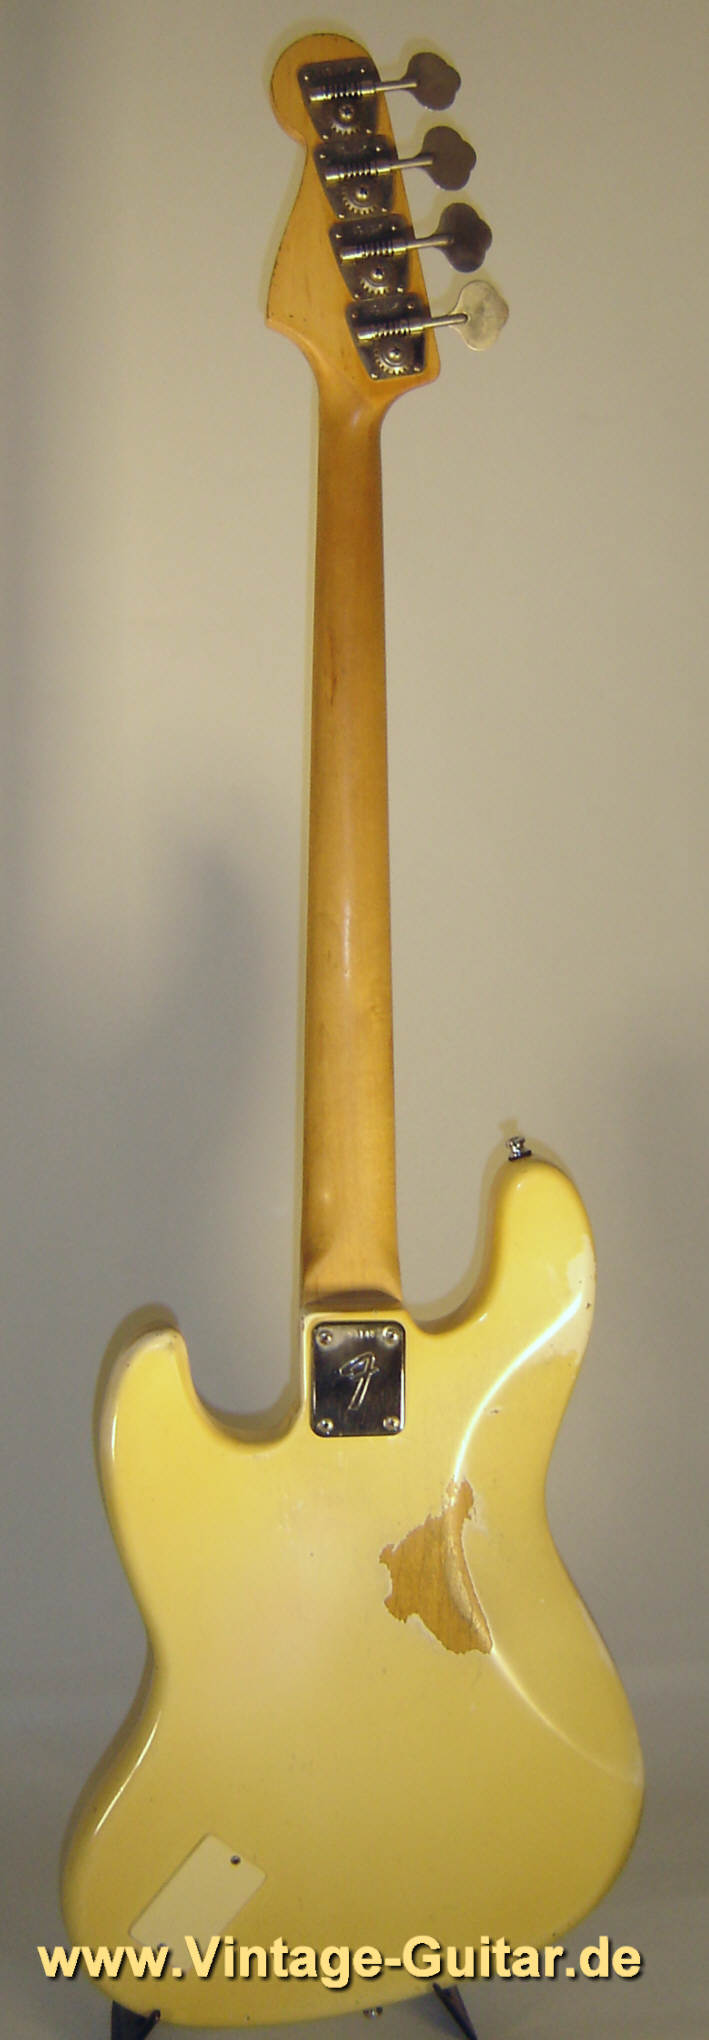 Fender_Jazz-Bass_1973_Olympic-White-3.jpg